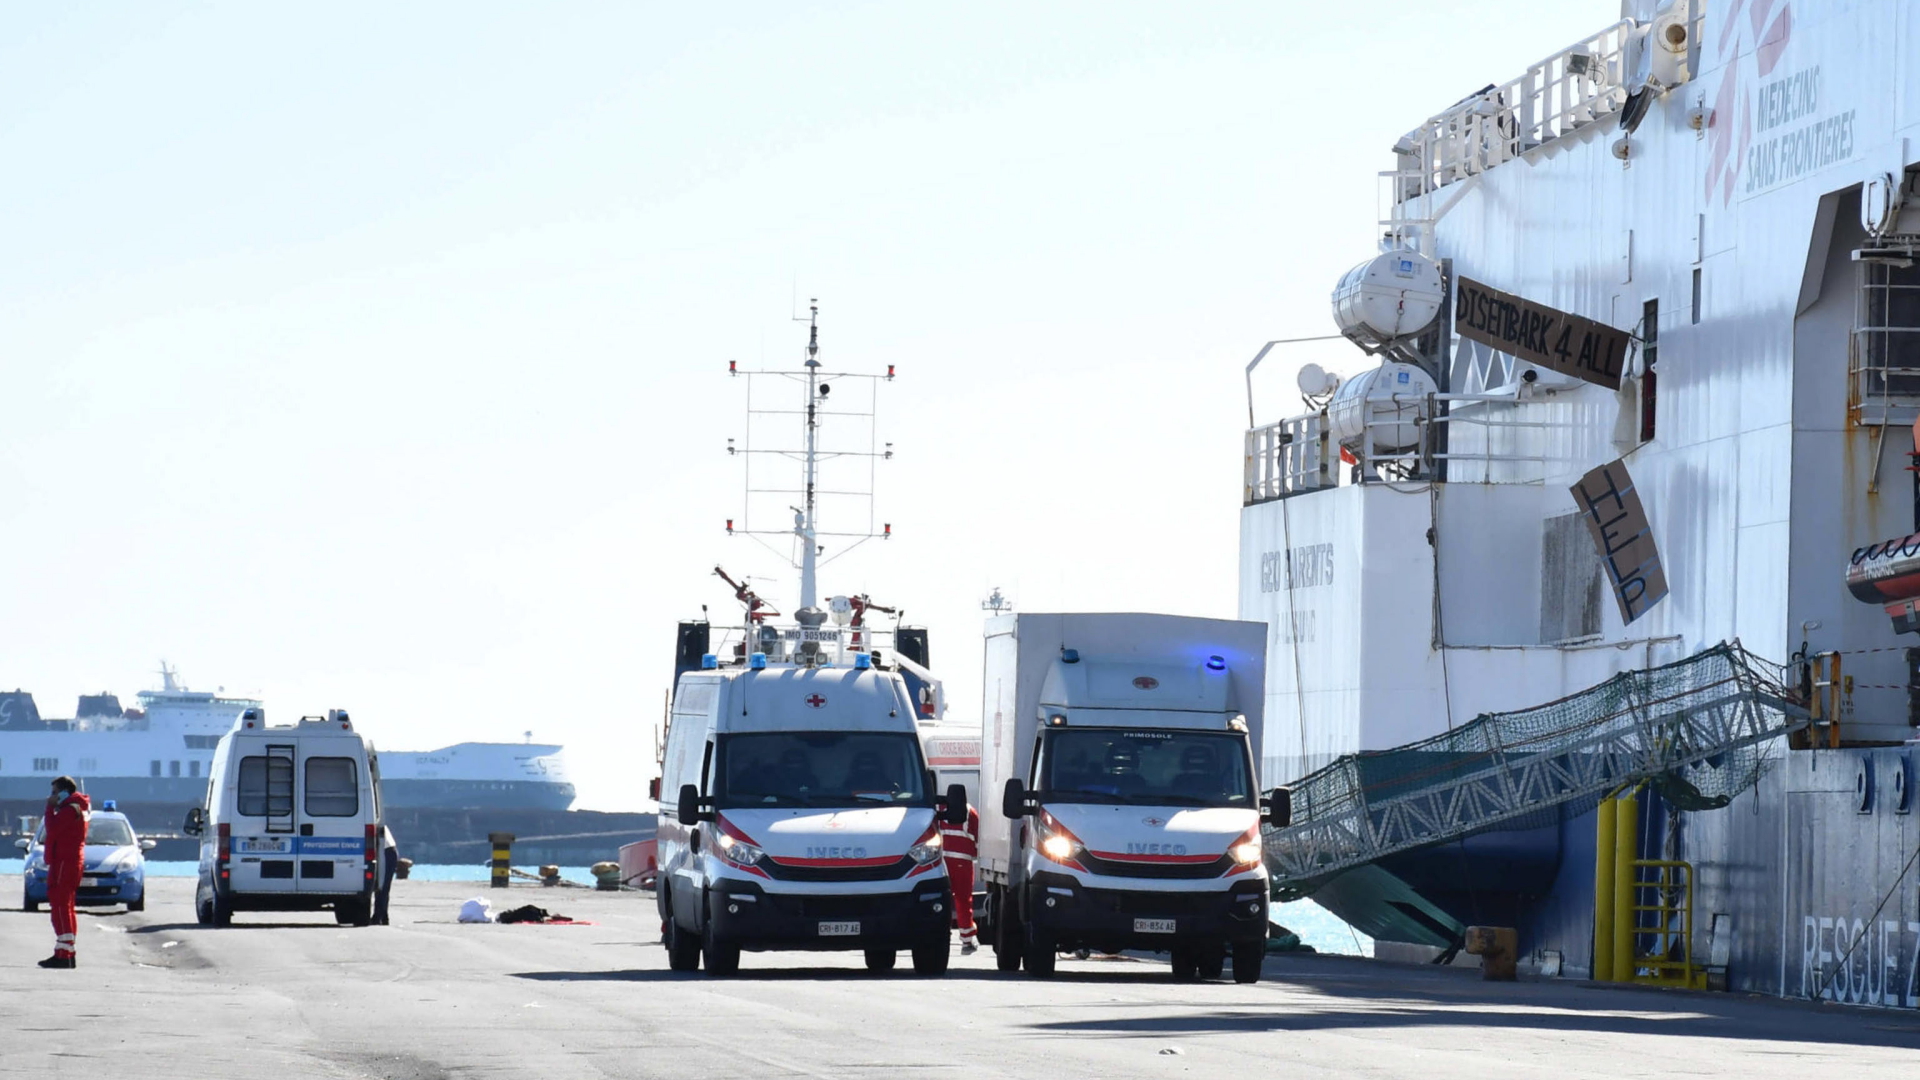 Rettungswagen stehen vor einem Schiff in Sizilien, dass Migranten rettete. | EPA